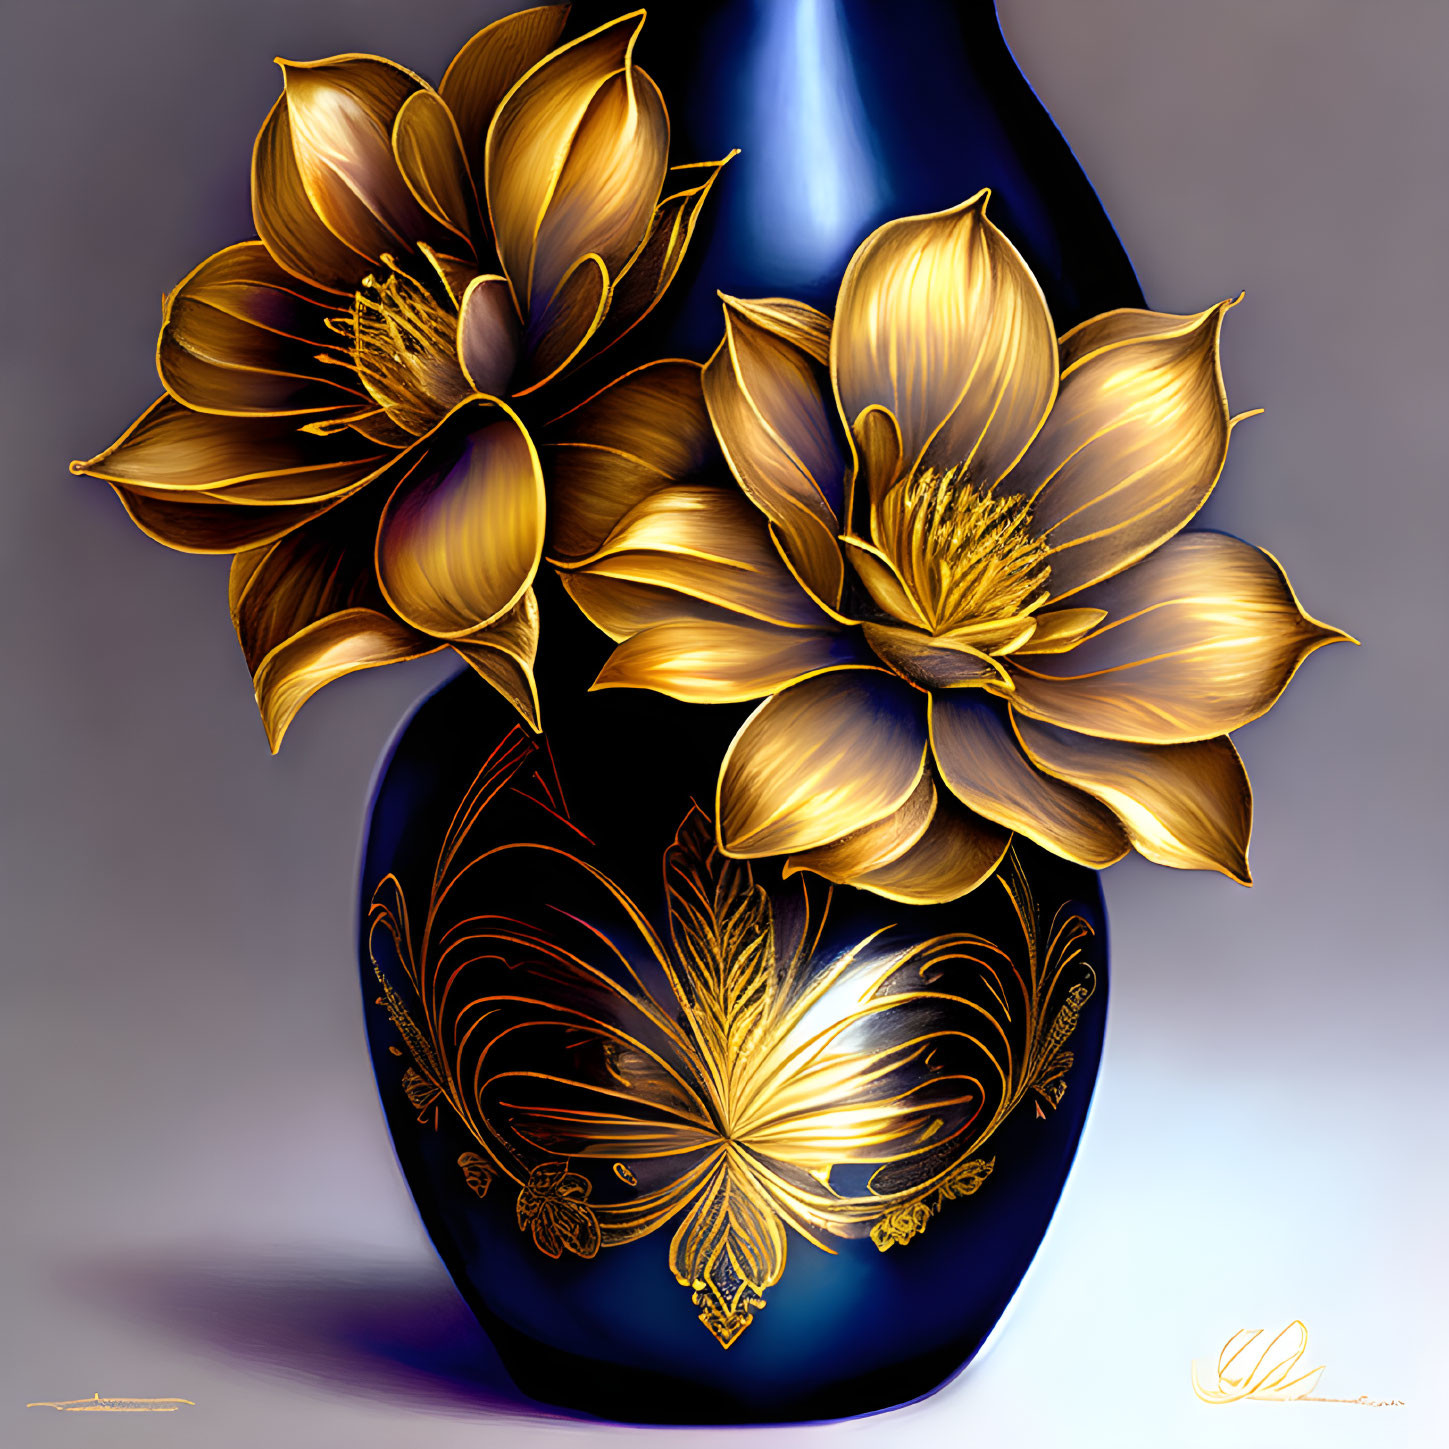 Cobalt-Blue Vase with Golden Lotus Flowers & Patterns